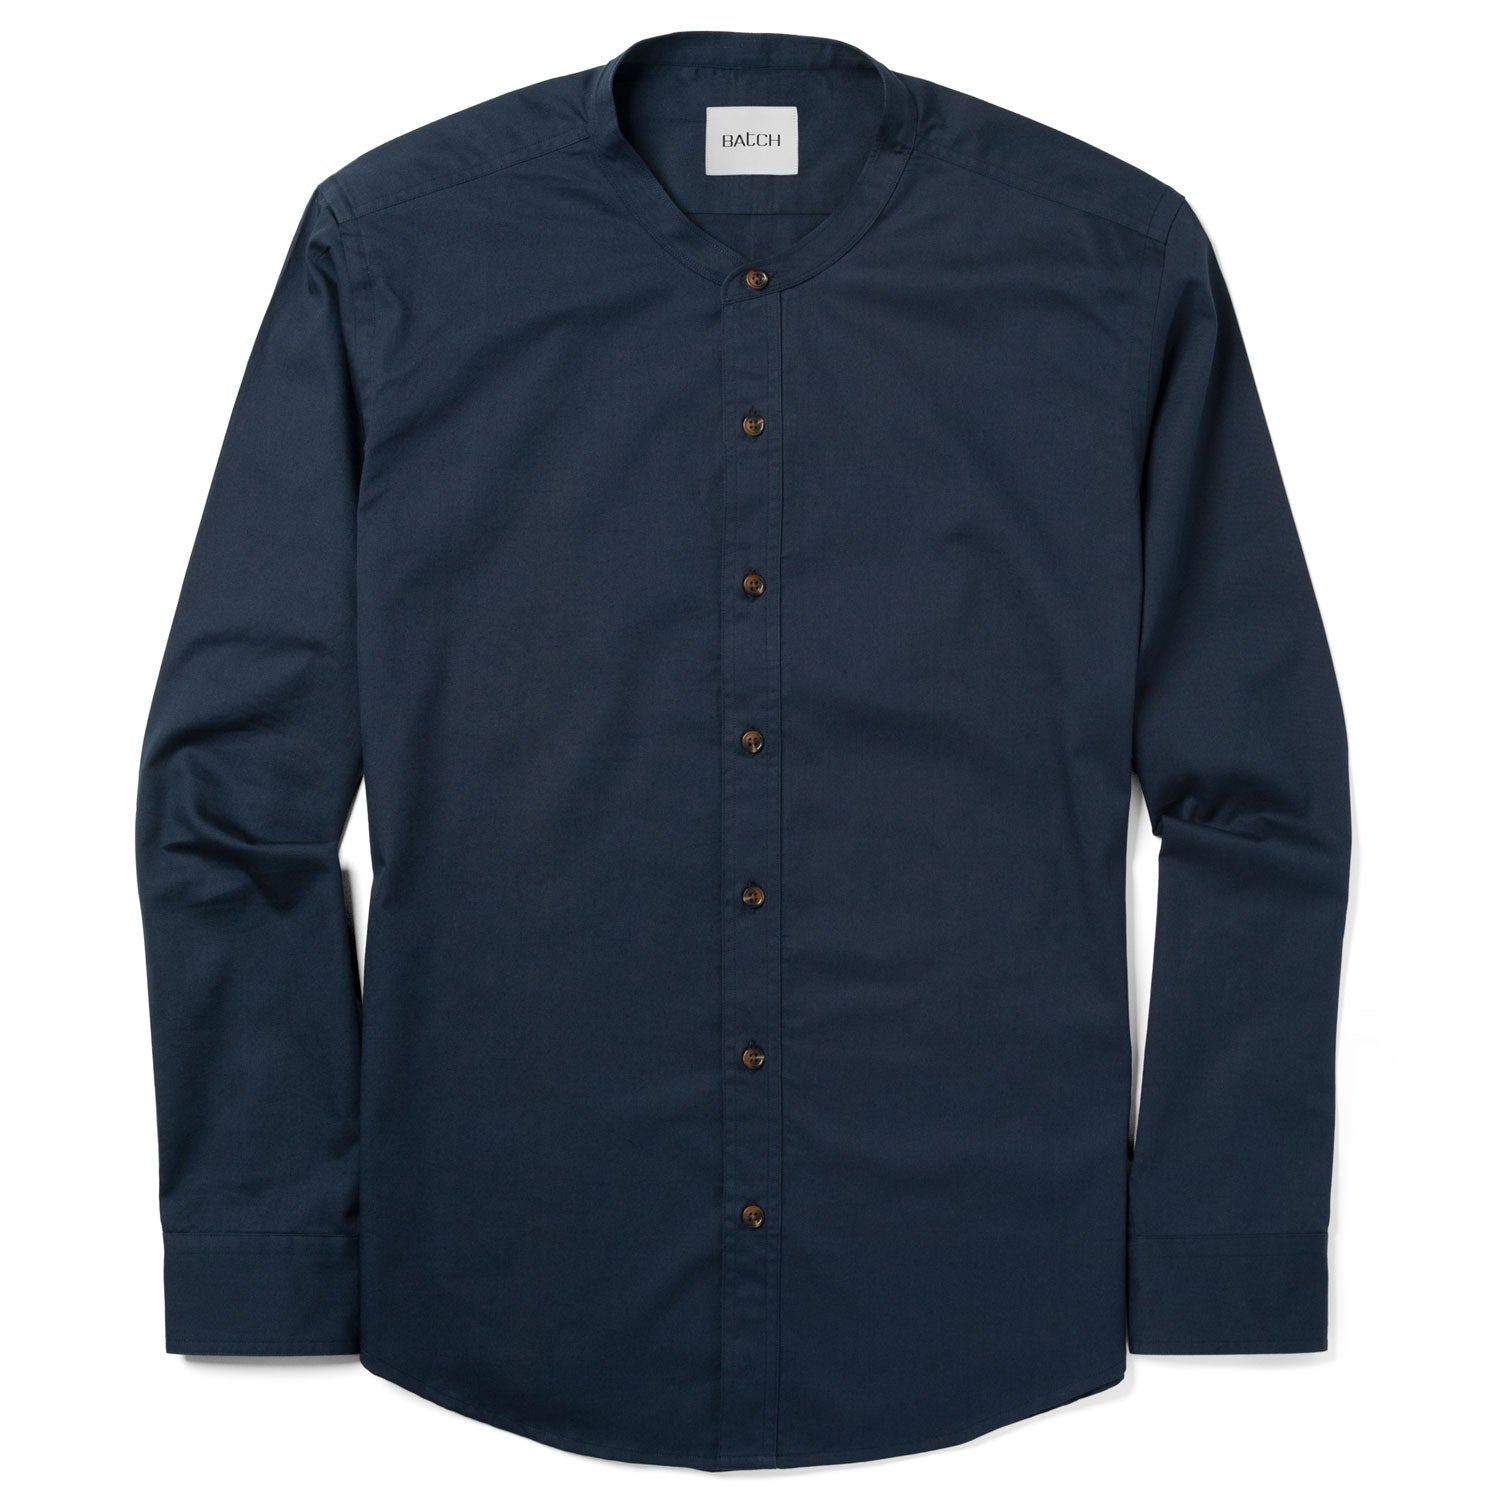 Essential Band Collar Button Down Shirt - Dark Navy Cotton Twill